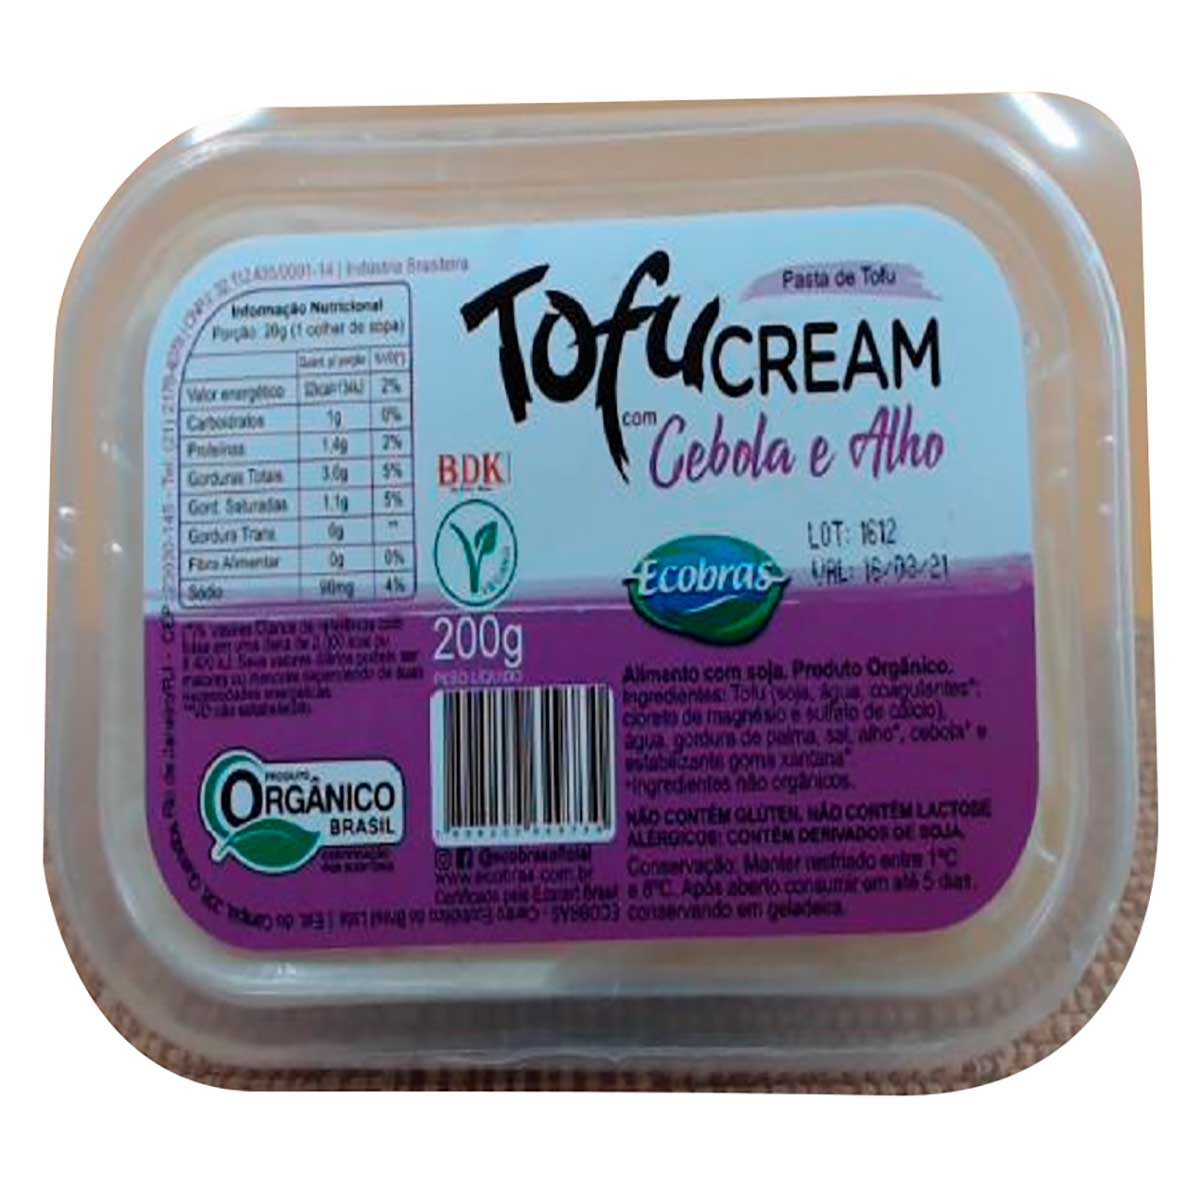 tofu-cream-cebola-e-alho-organico-200-g-1.jpg